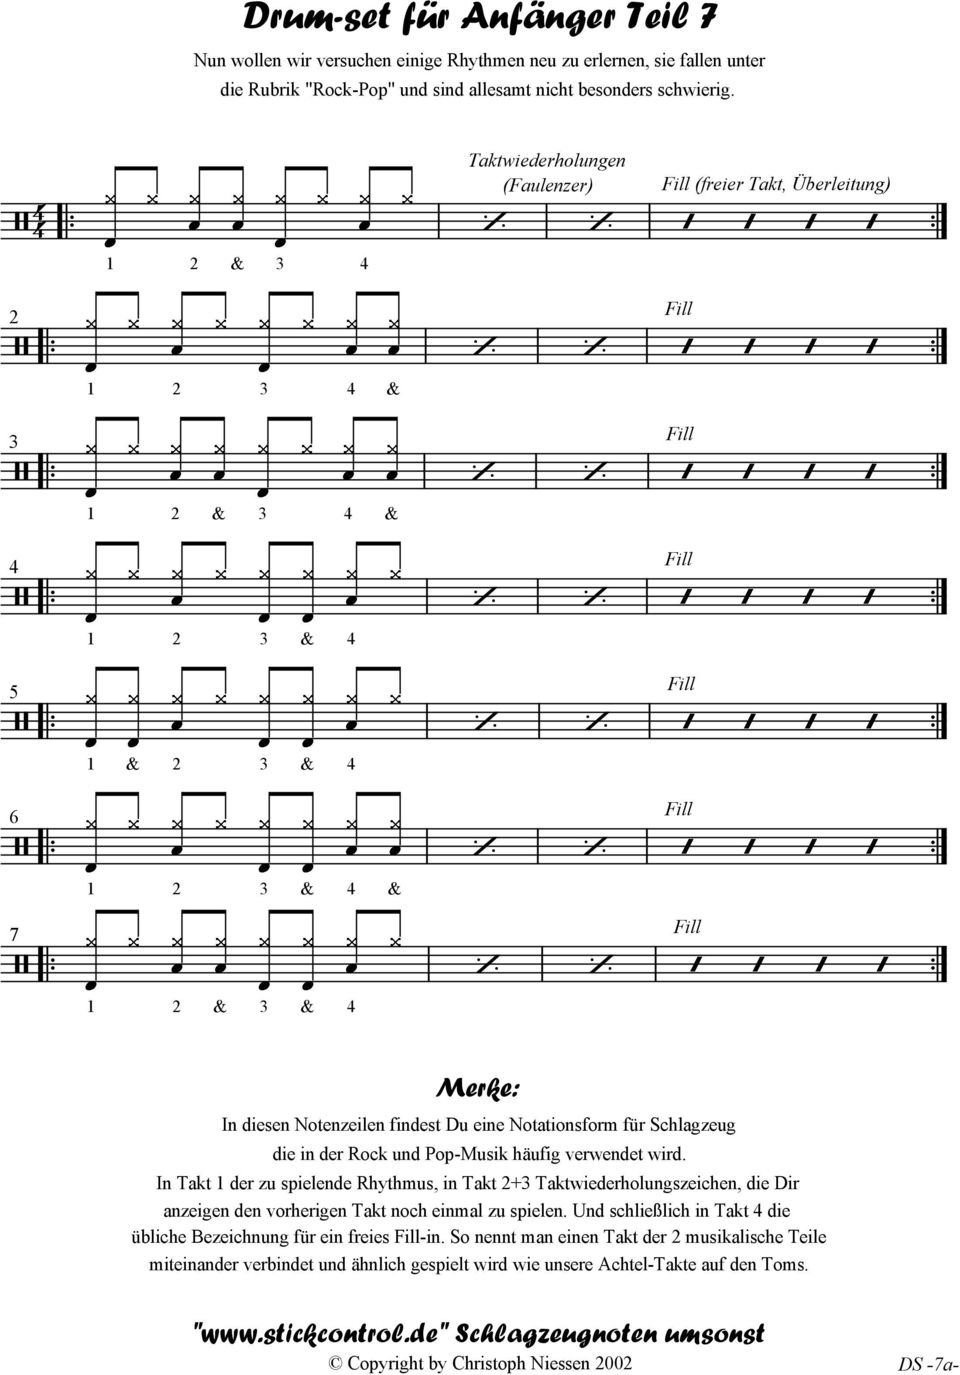 Notenzeilen findest Du eine Notationsform für Schlagzeug die in der ock und Pop-Musik häufig verwendet wird.